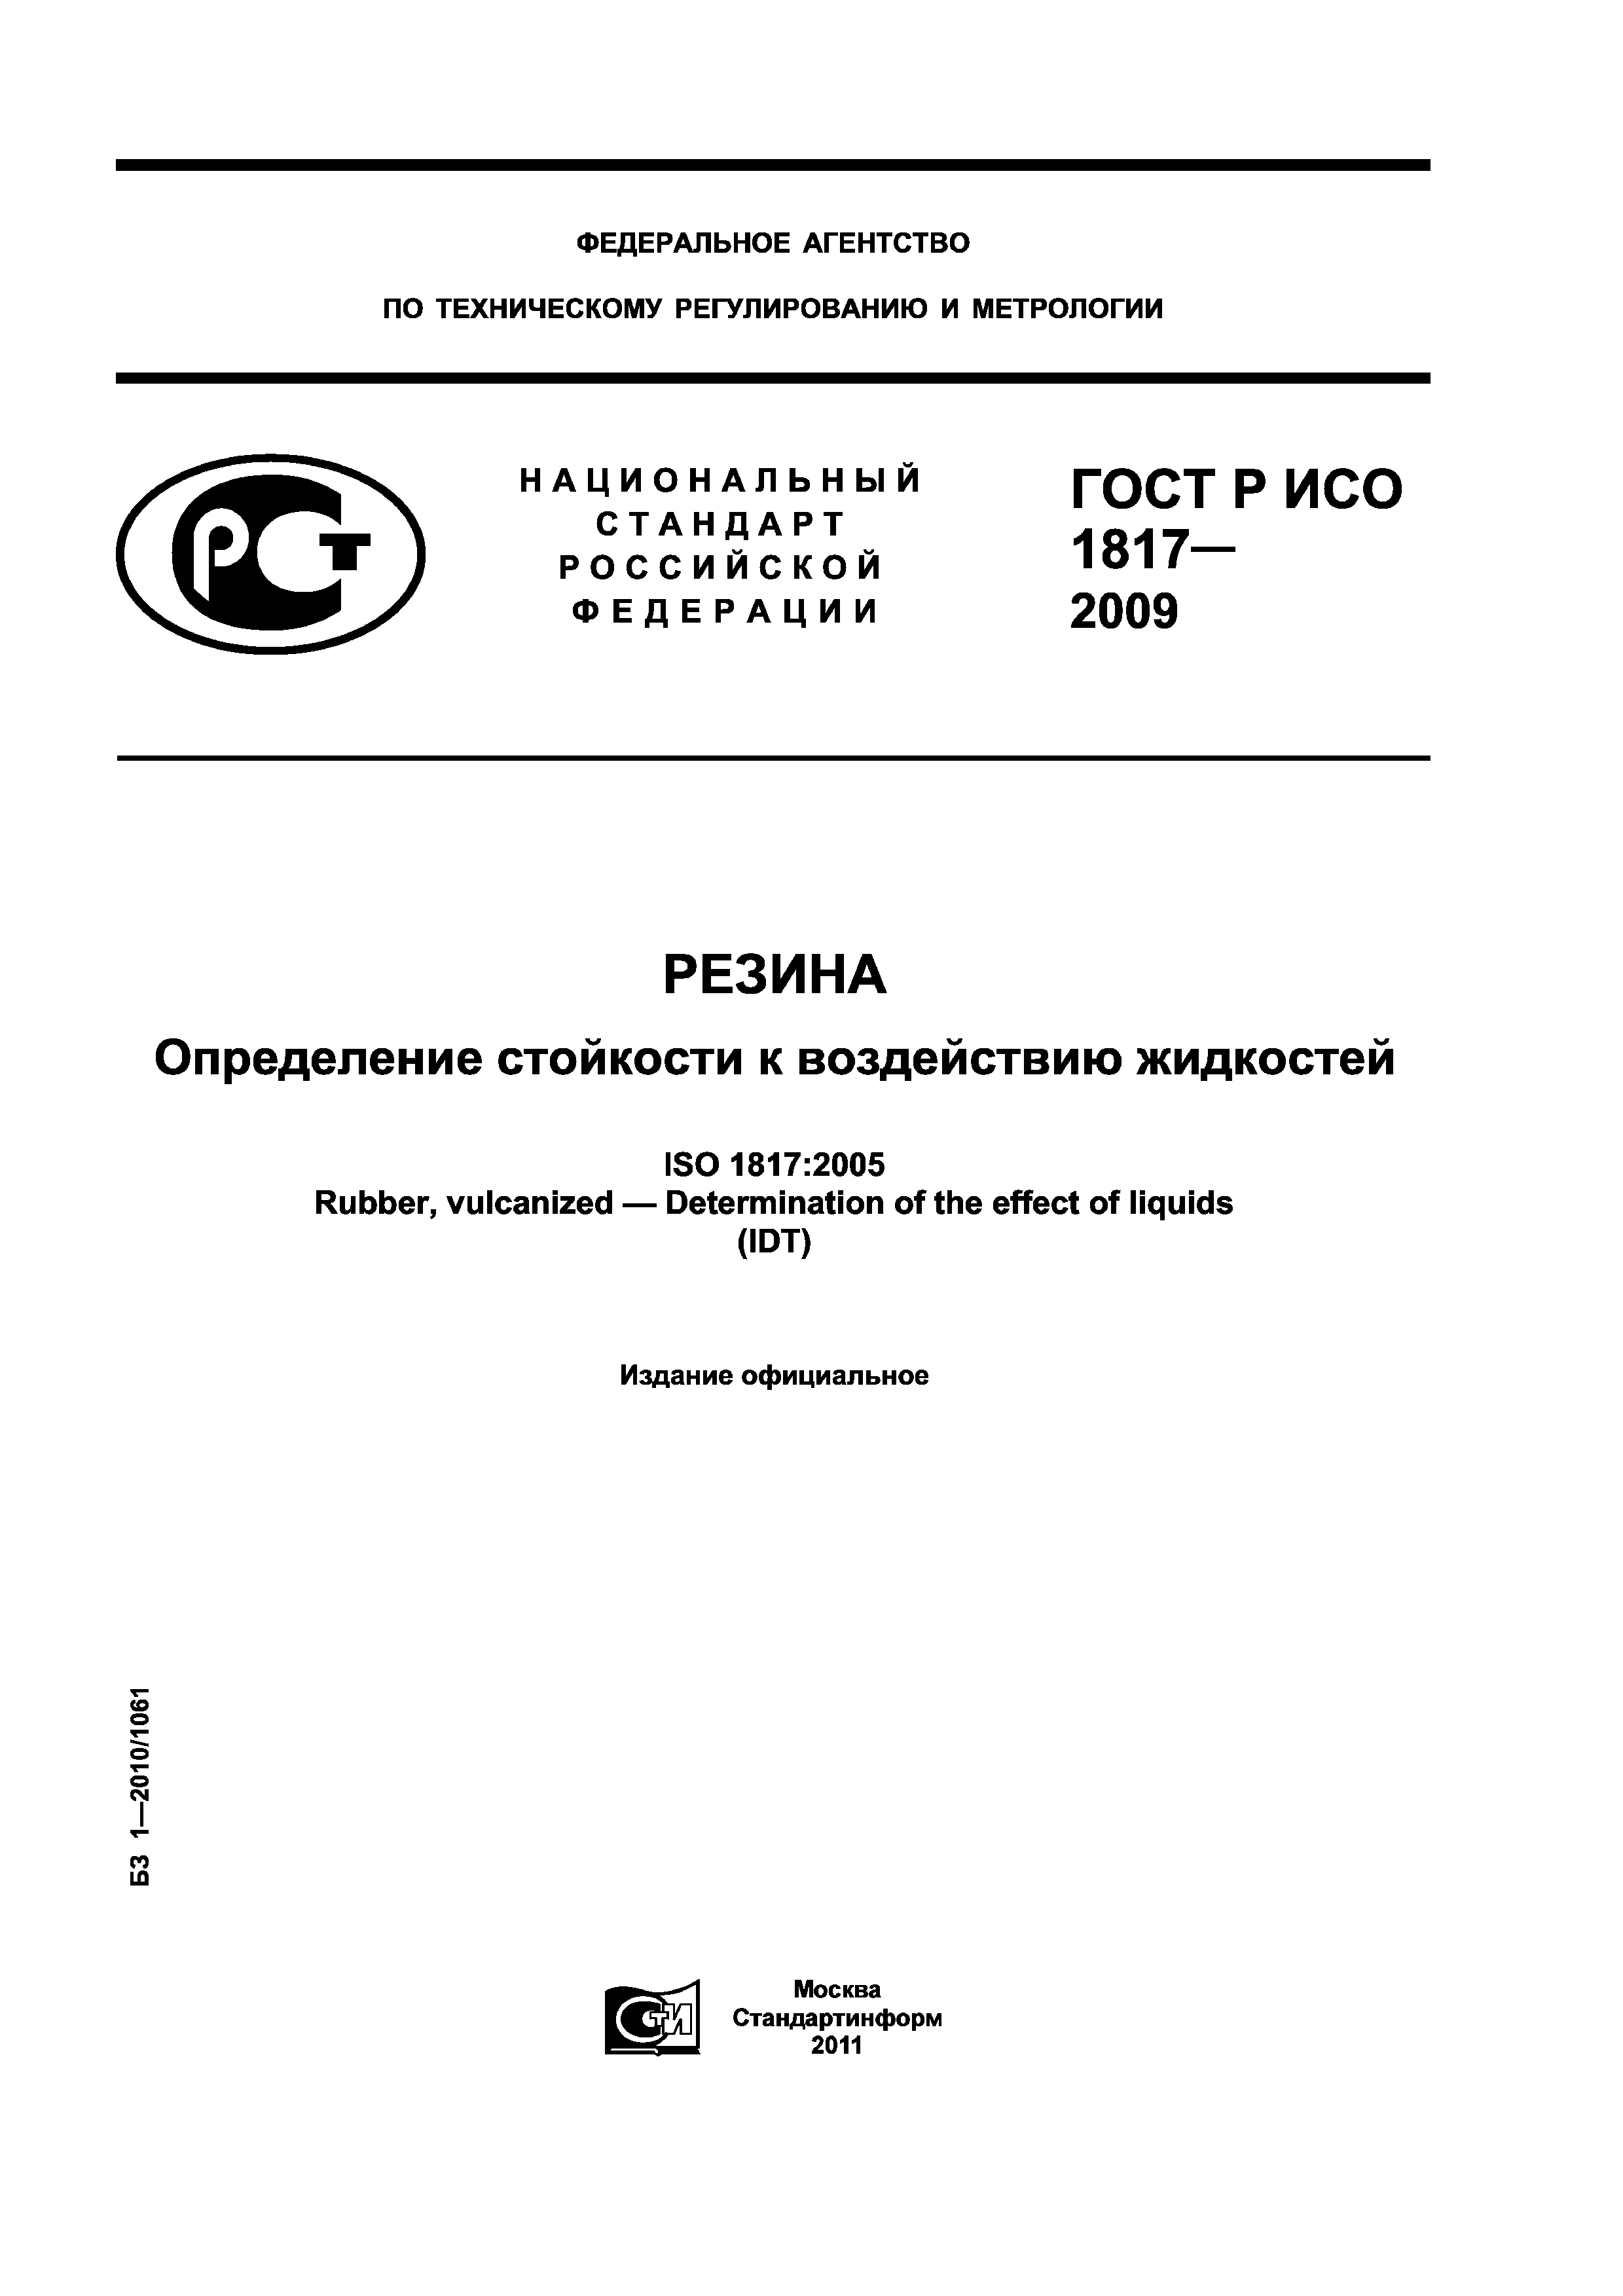 ГОСТ Р ИСО 1817-2009